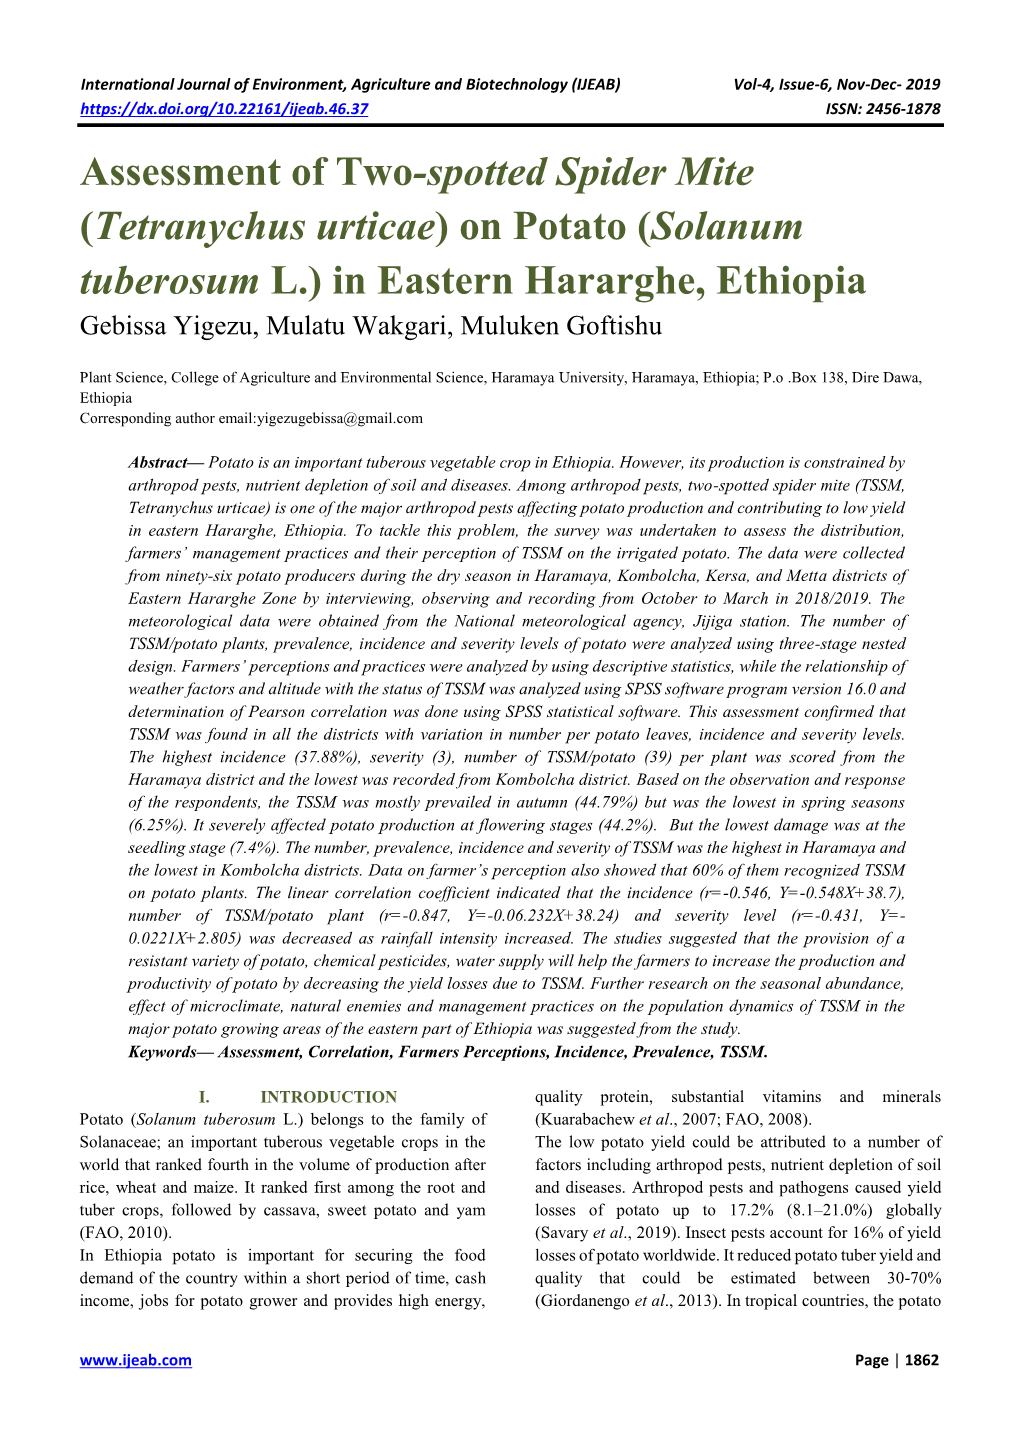 Tetranychus Urticae) on Potato (Solanum Tuberosum L.) in Eastern Hararghe, Ethiopia Gebissa Yigezu, Mulatu Wakgari, Muluken Goftishu